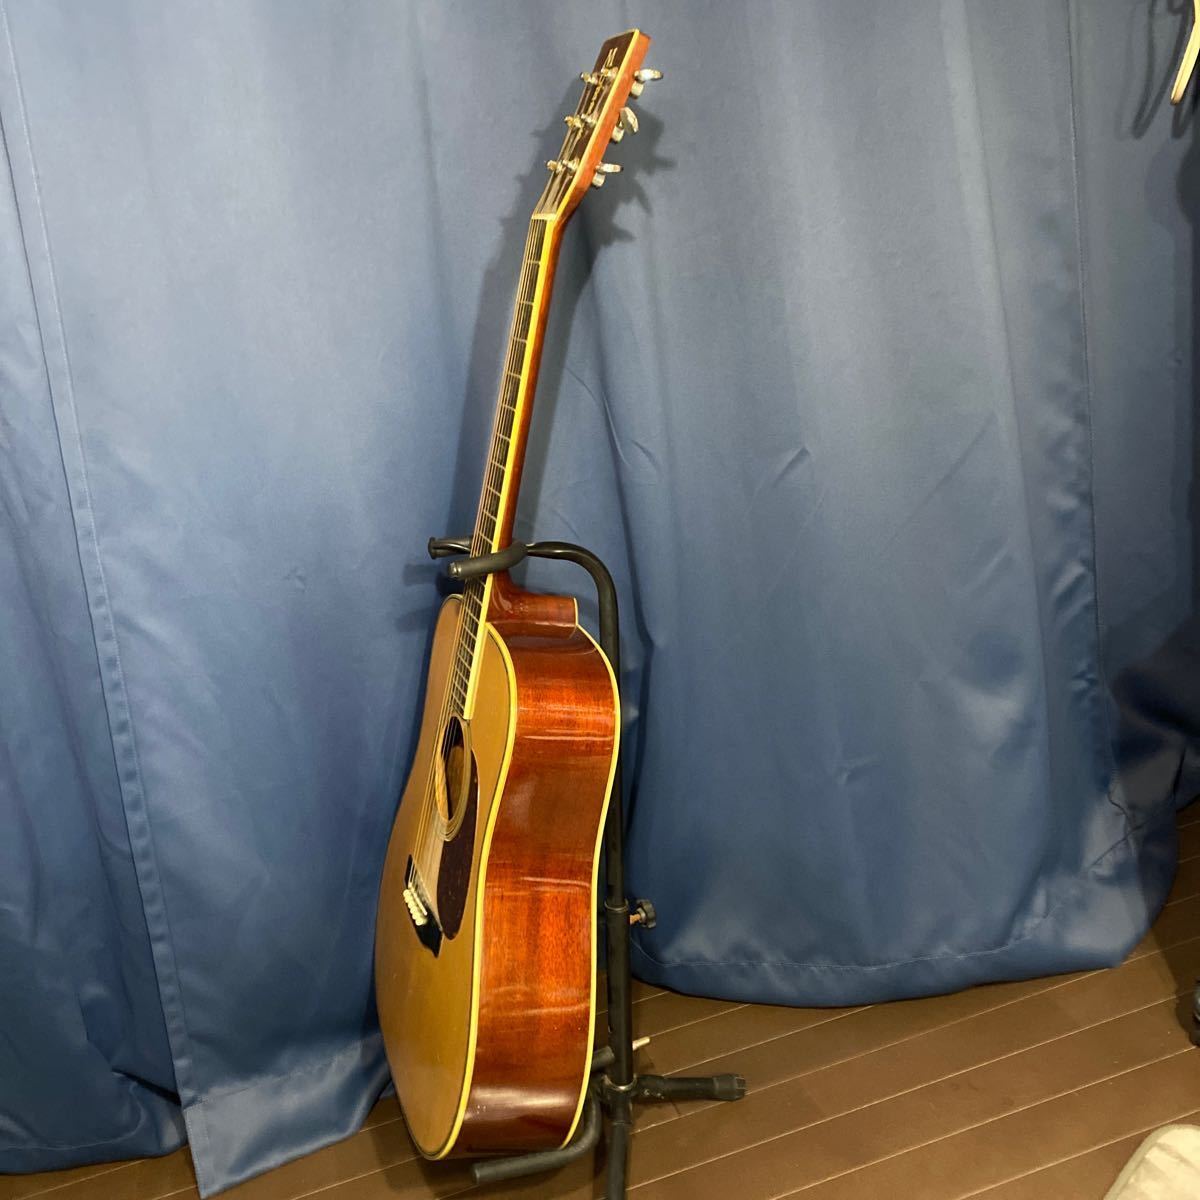 【超激安】MORRIS アコースティックギター W-39M ギター/モーリス/アコギ/Natural 日本製 ヴィンテージ弦楽器 演奏/超破格大特価1000円_画像3